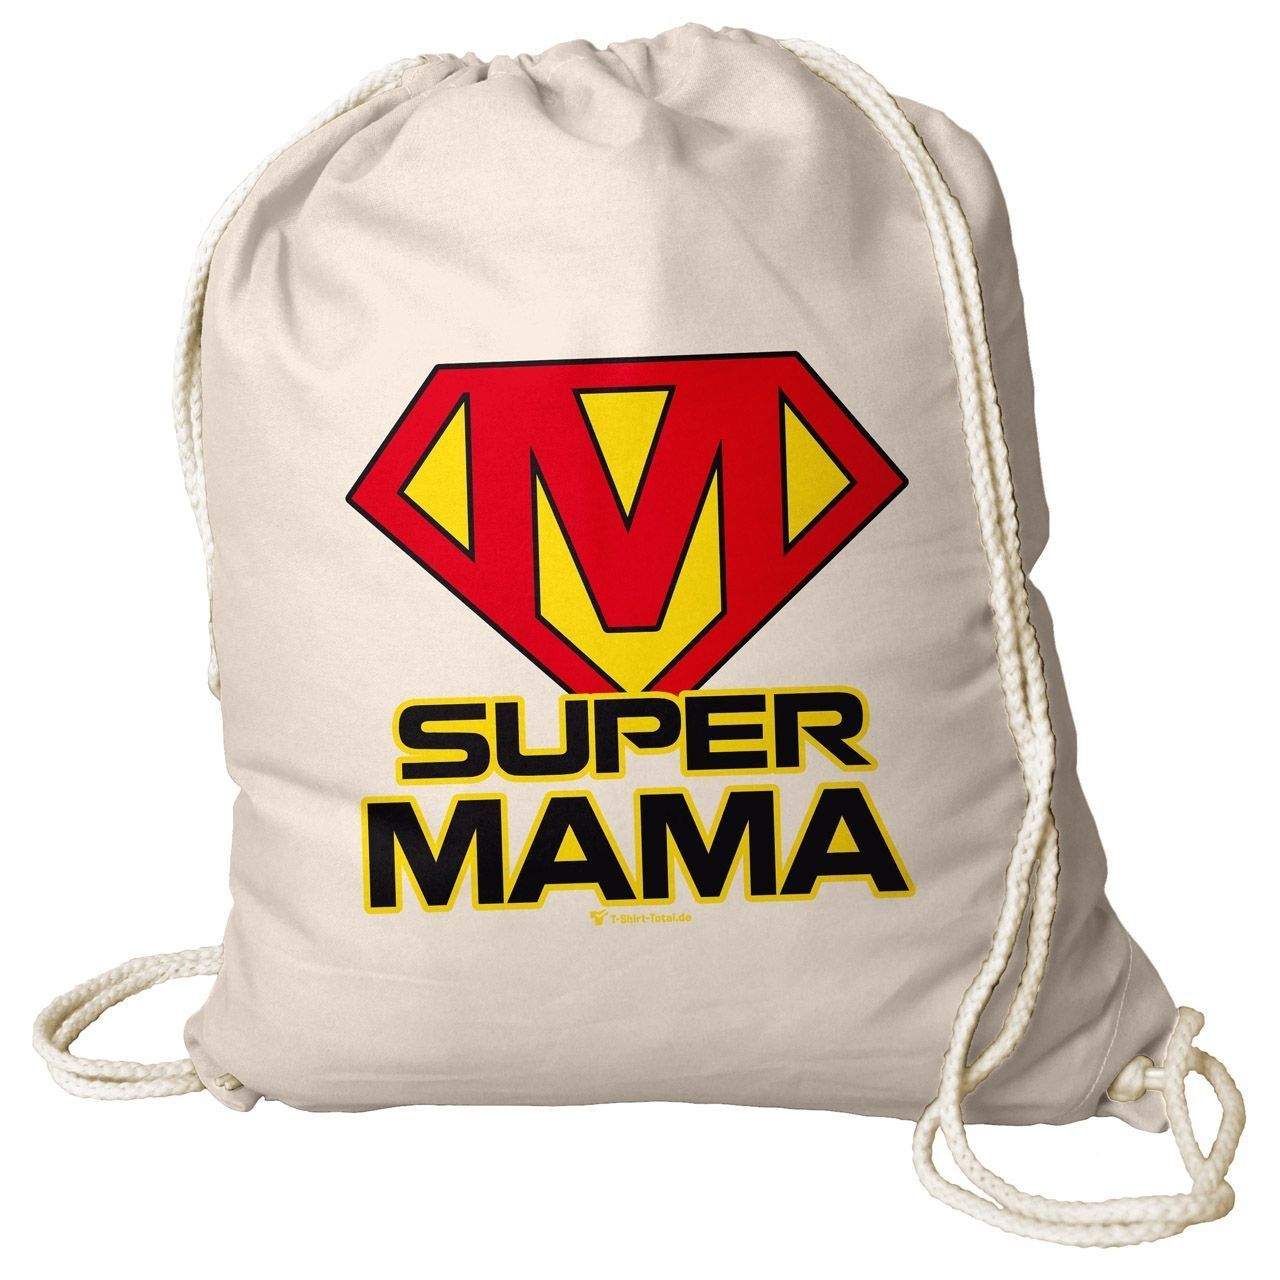 Super Mama Rucksack Beutel natur